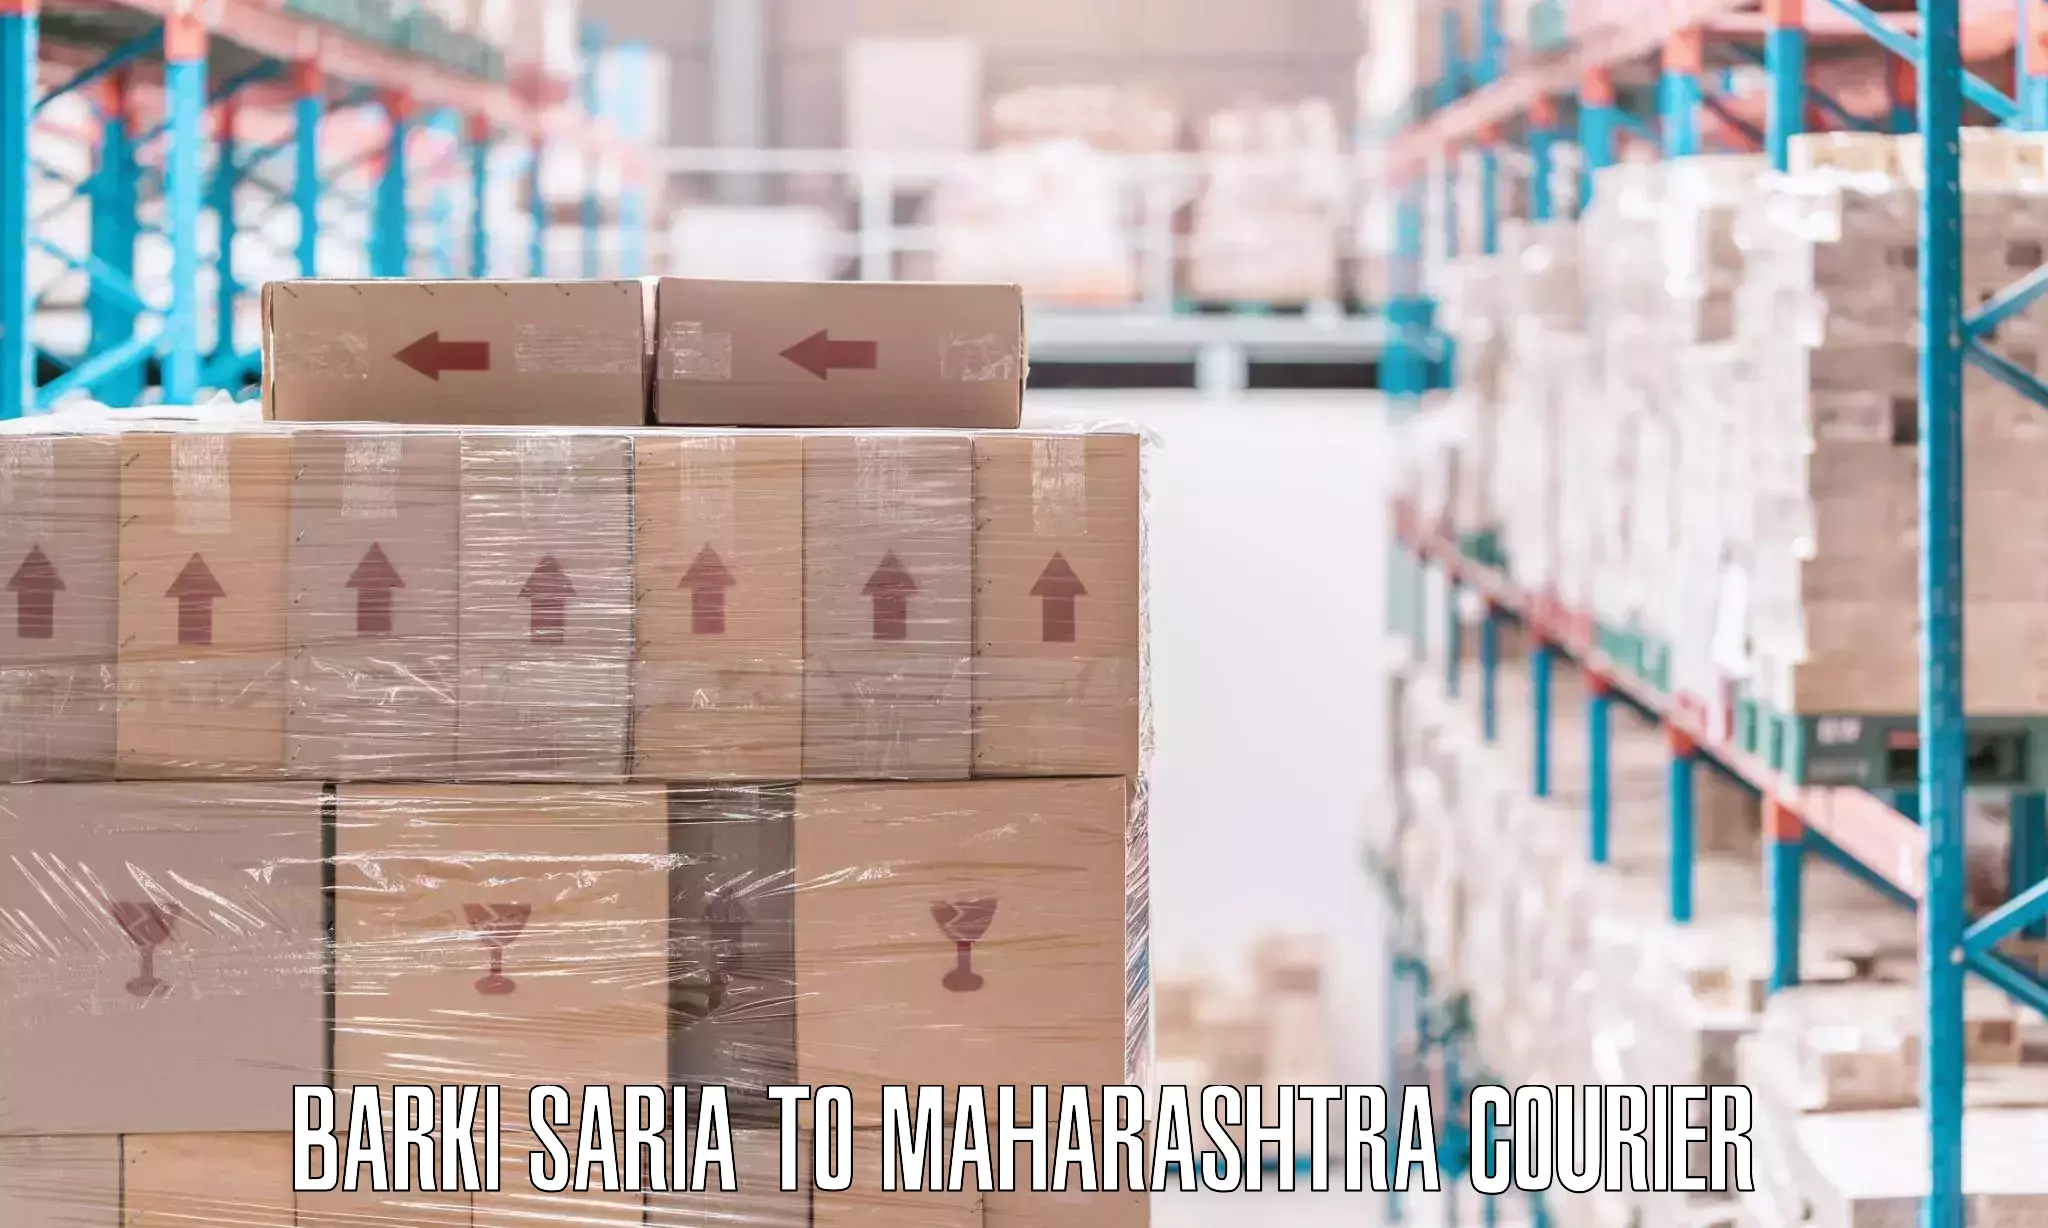 Efficient packing services Barki Saria to Tata Institute of Social Sciences Mumbai